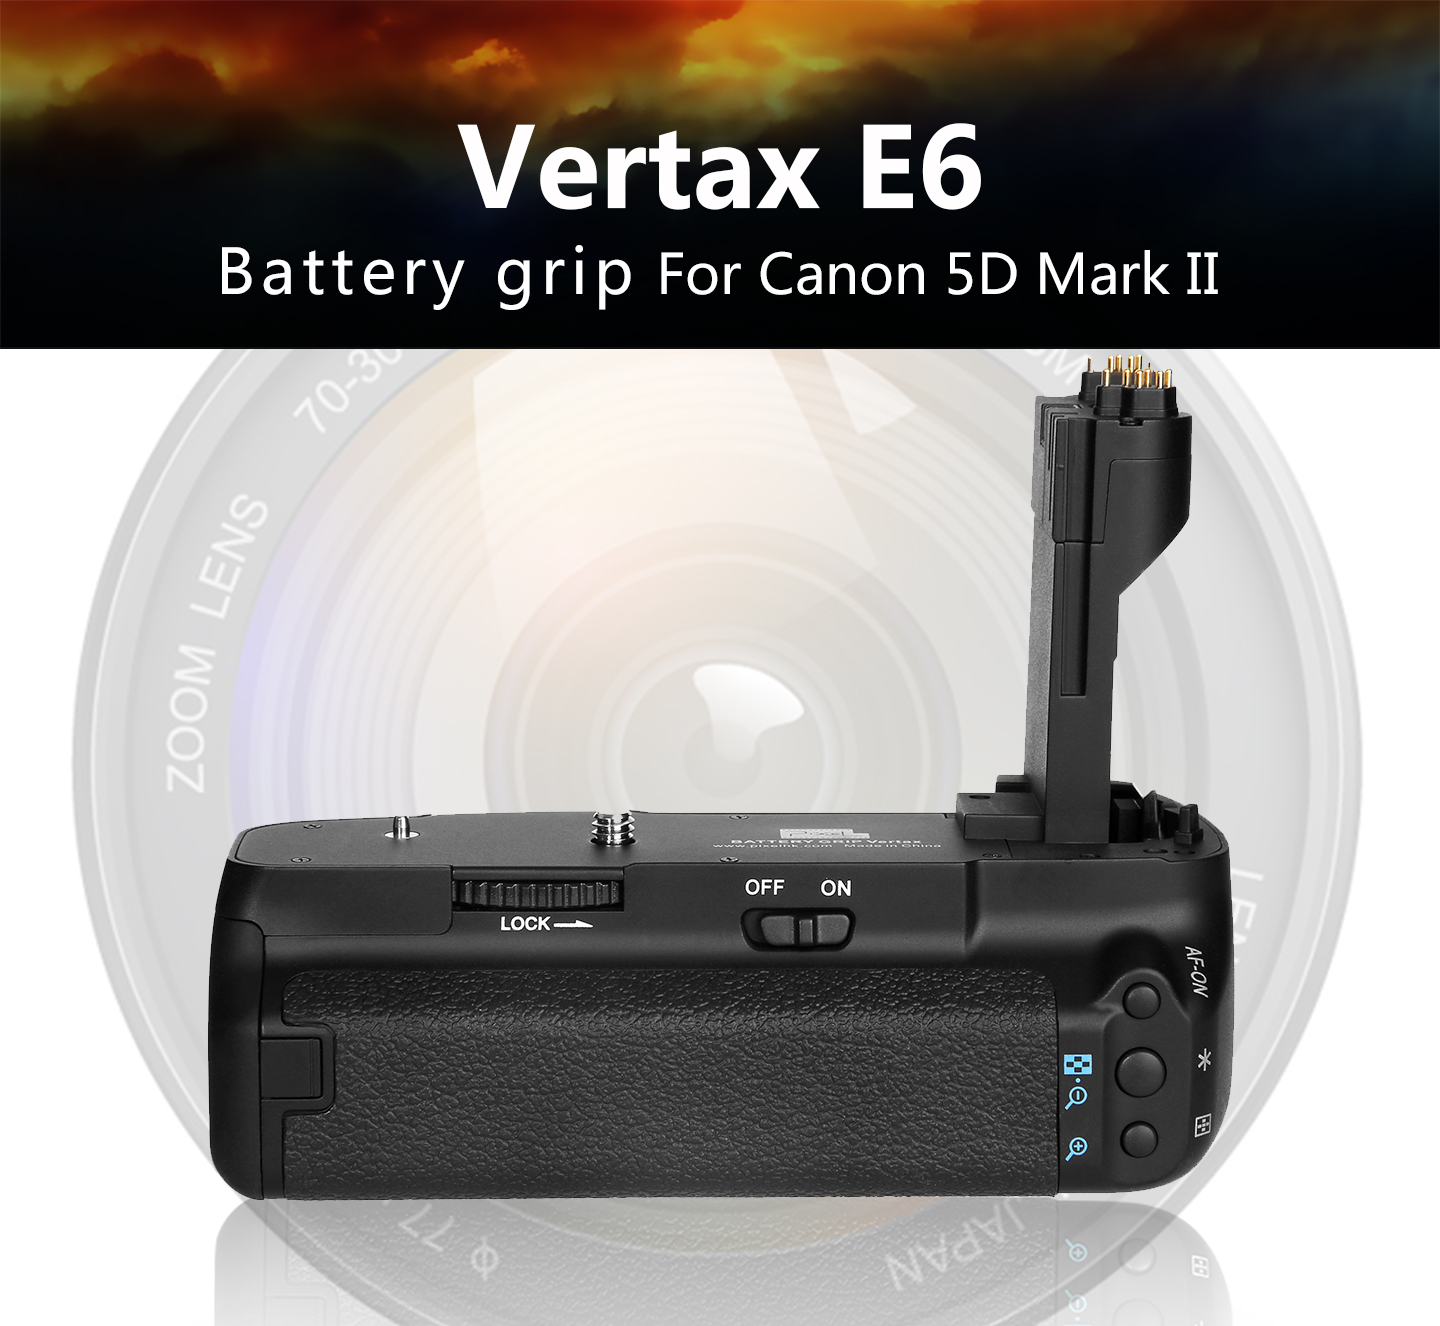 Vertax E6 Battey grip For Canon 5D Mark II